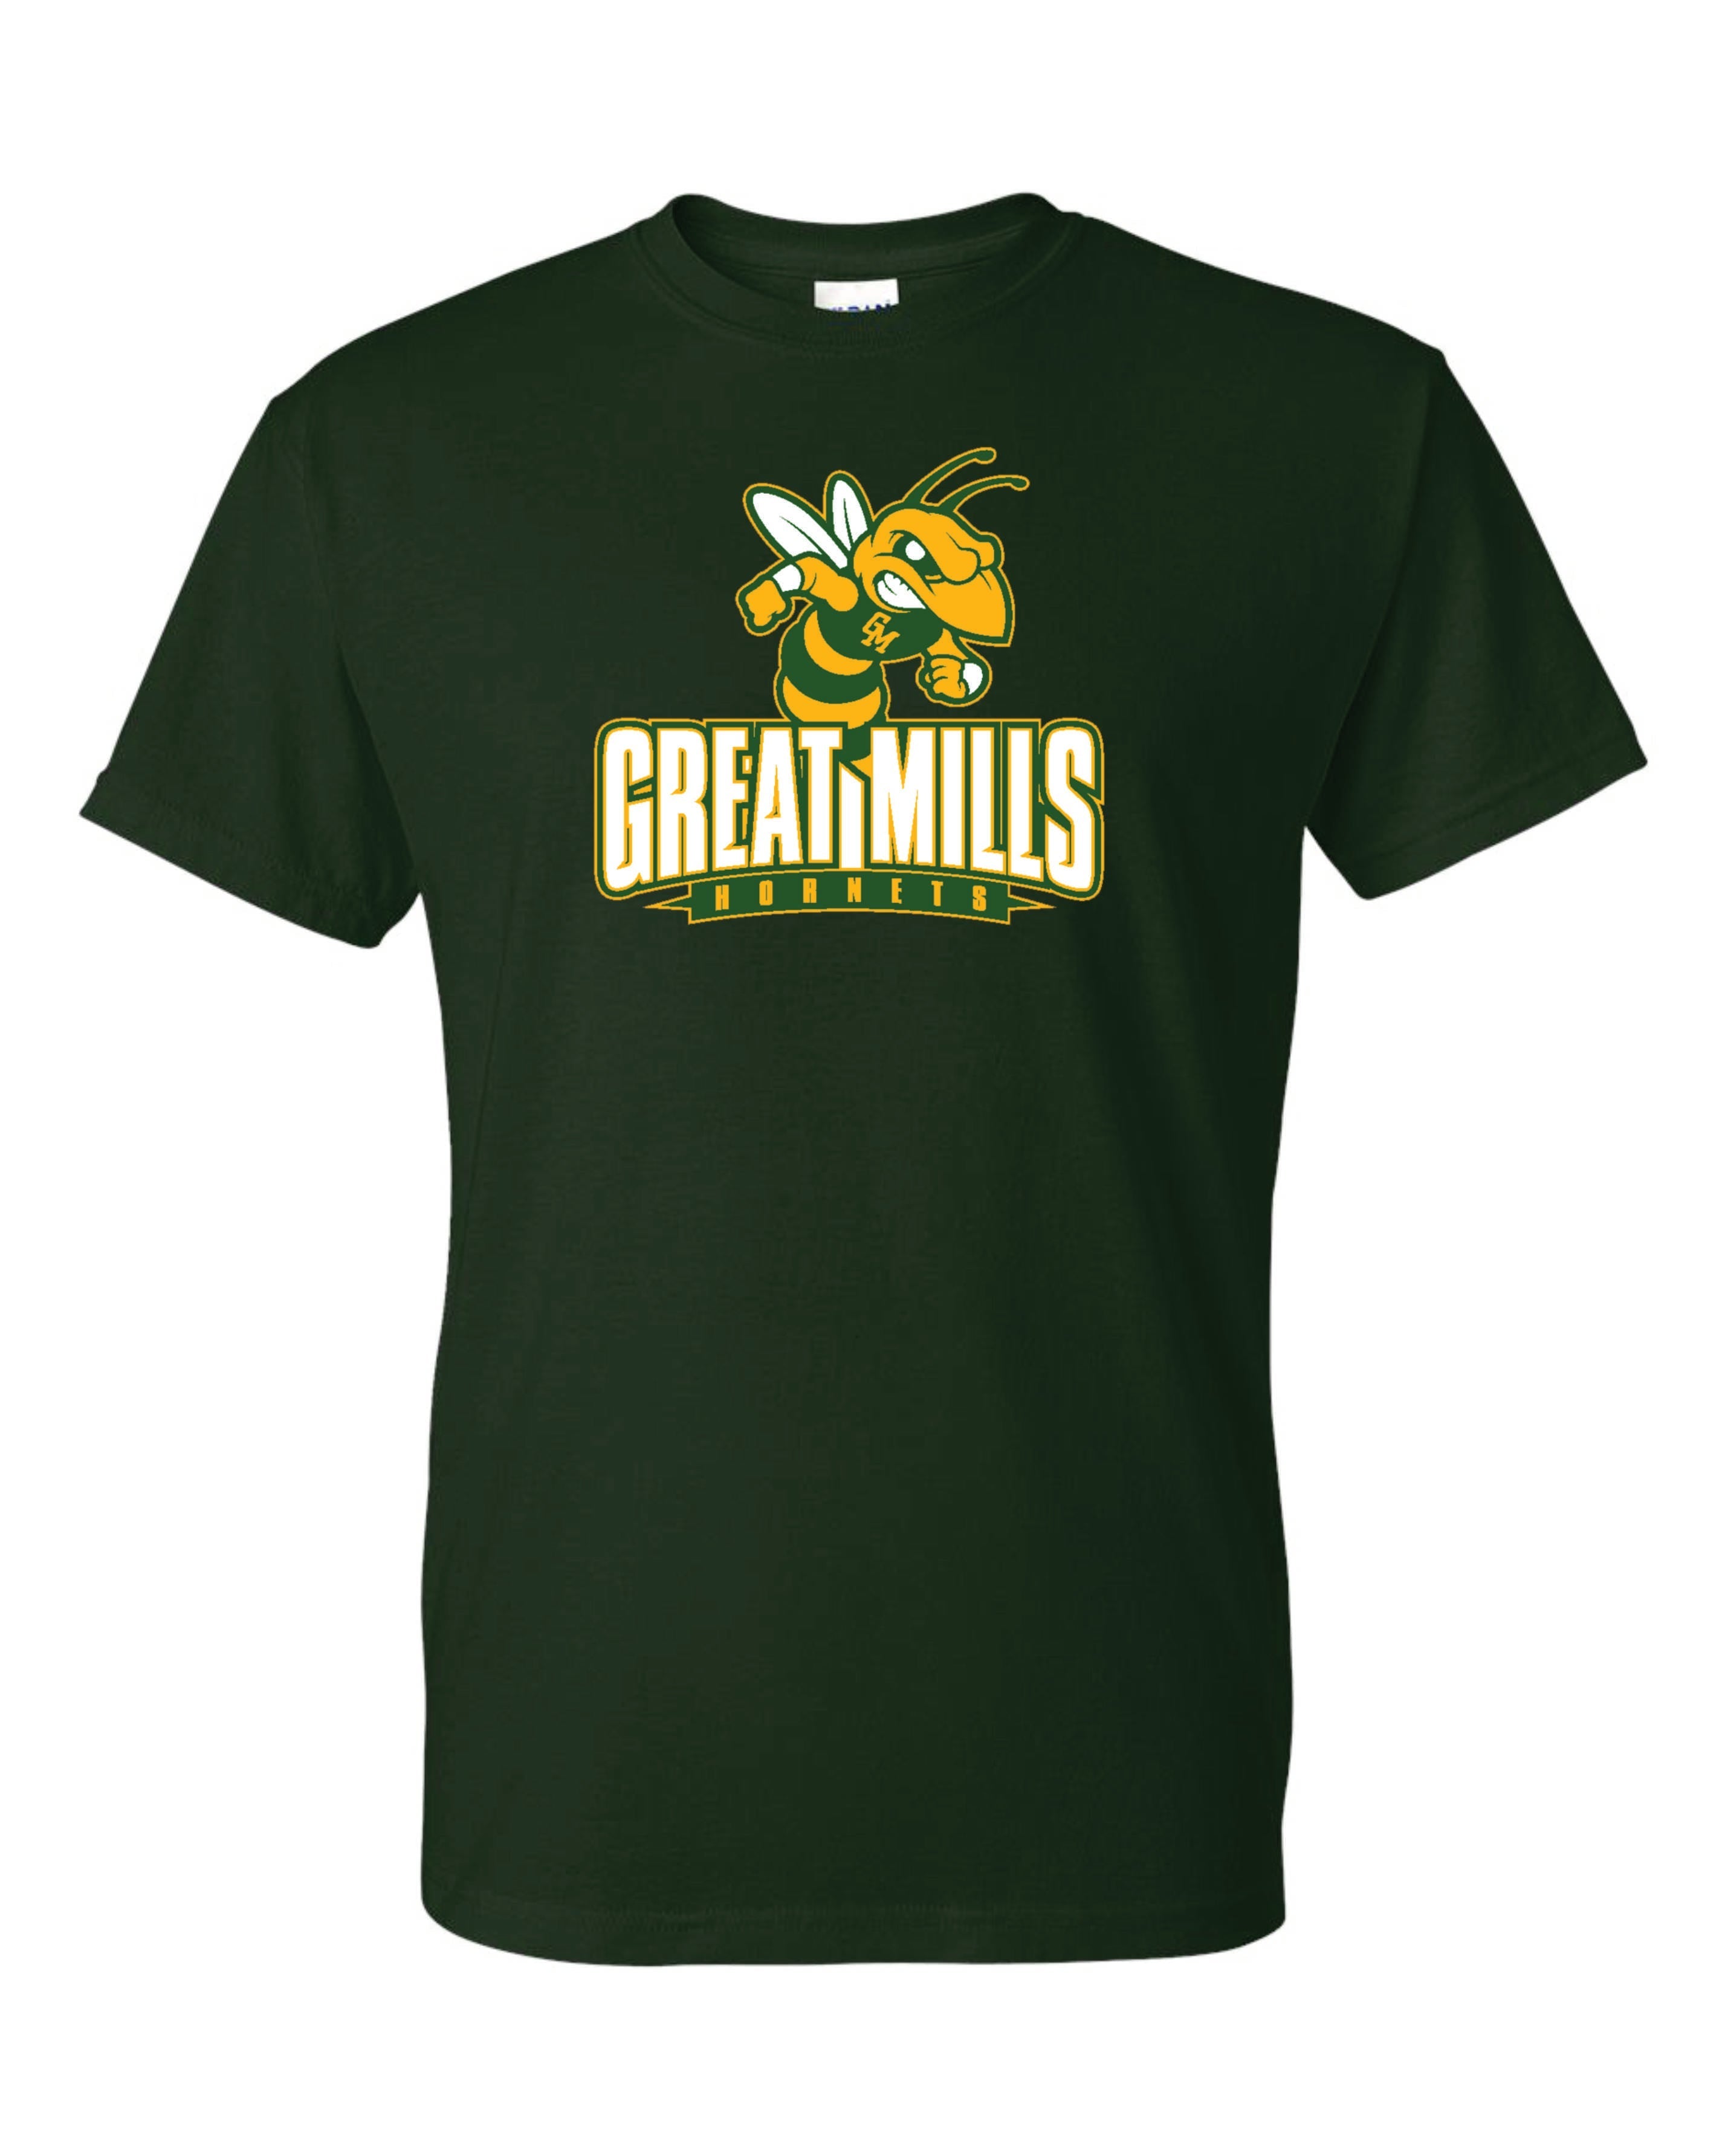 Great Mills Football Short Sleeve T-Shirt 50/50 Blend